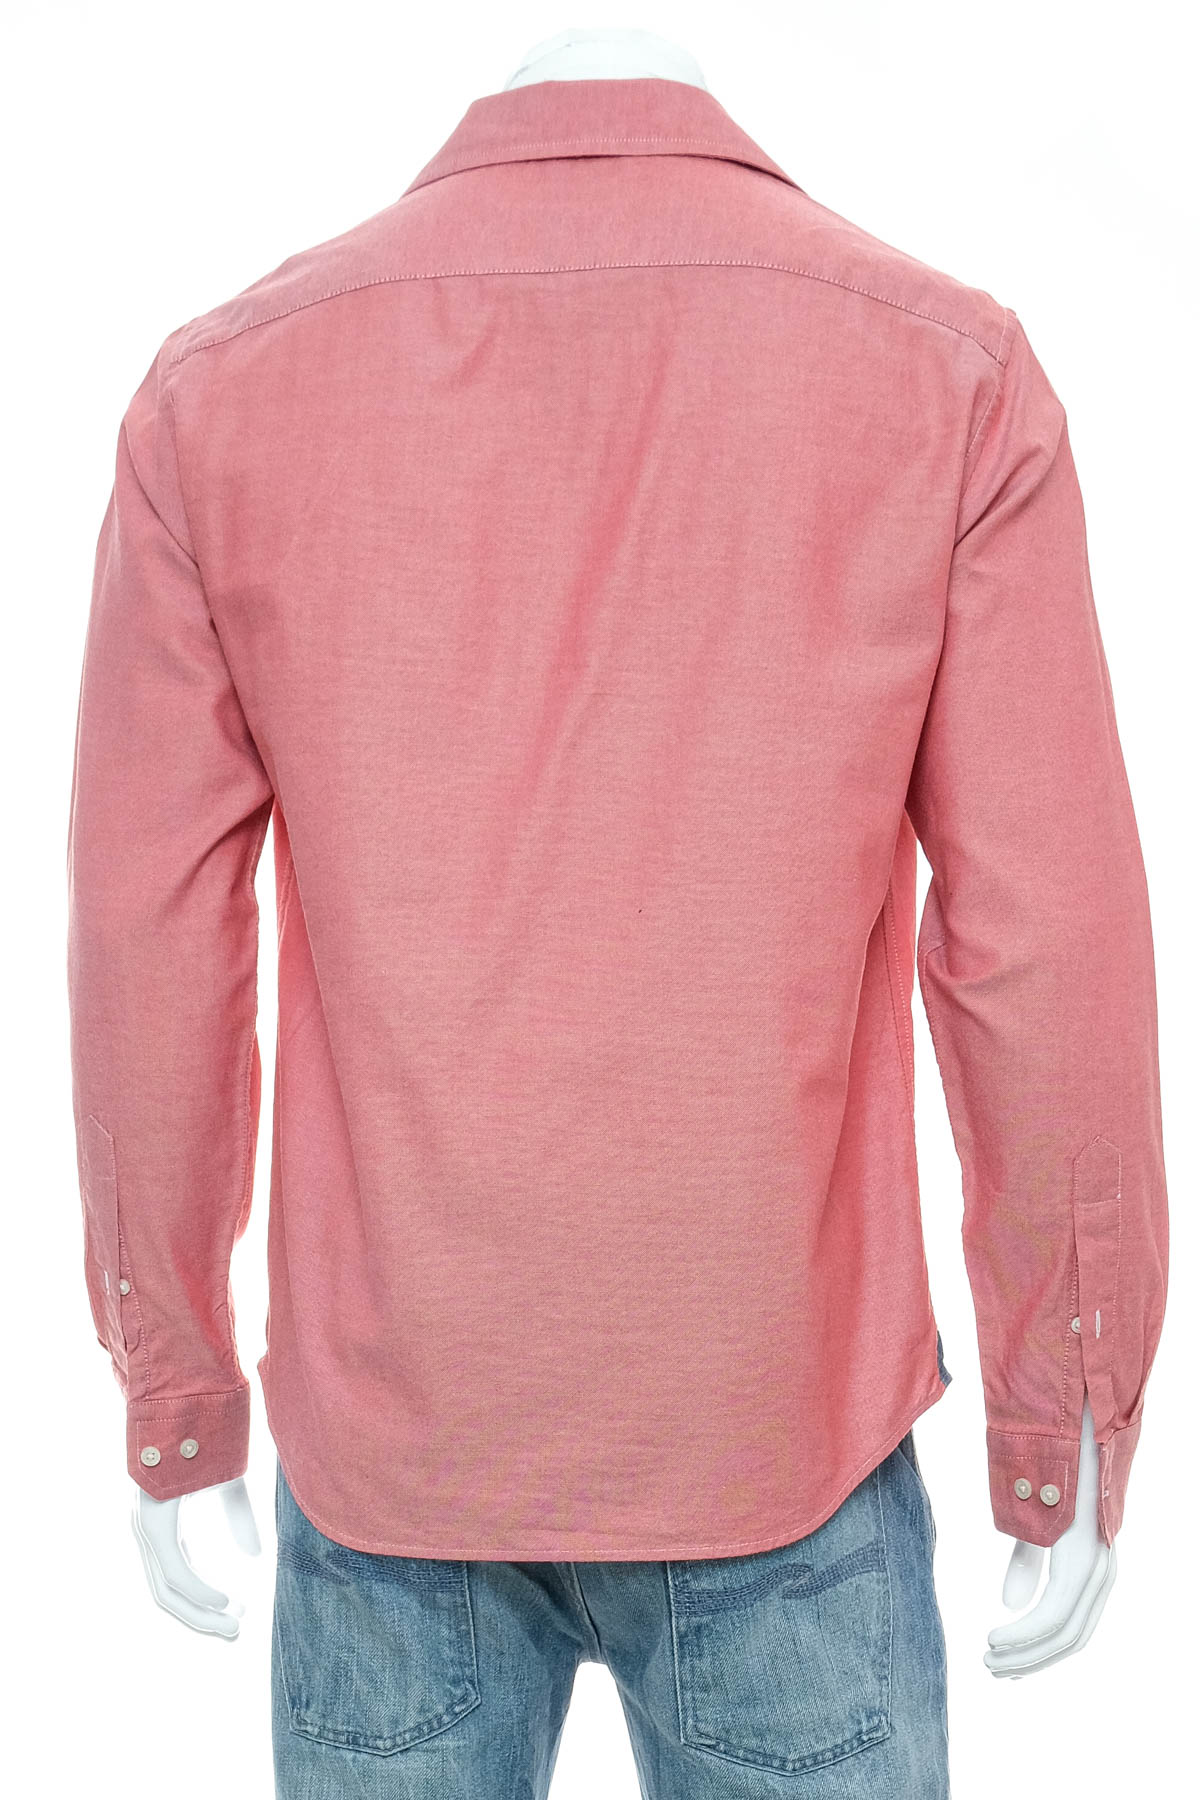 Ανδρικό πουκάμισο - BANANA REPUBLIC - 1